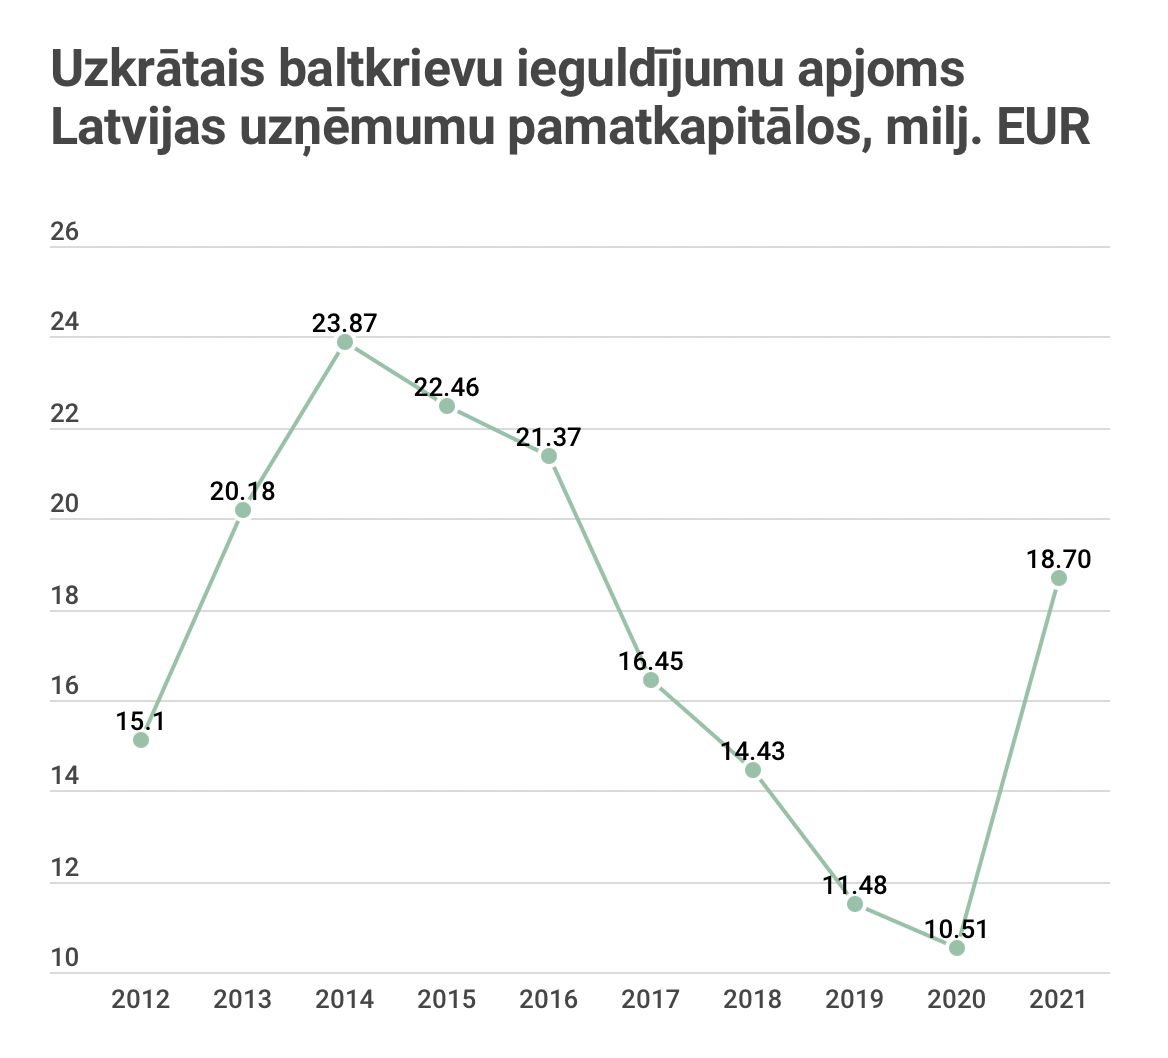 Инвестиции белорусов в латвийский бизнес самые высокие за пять лет